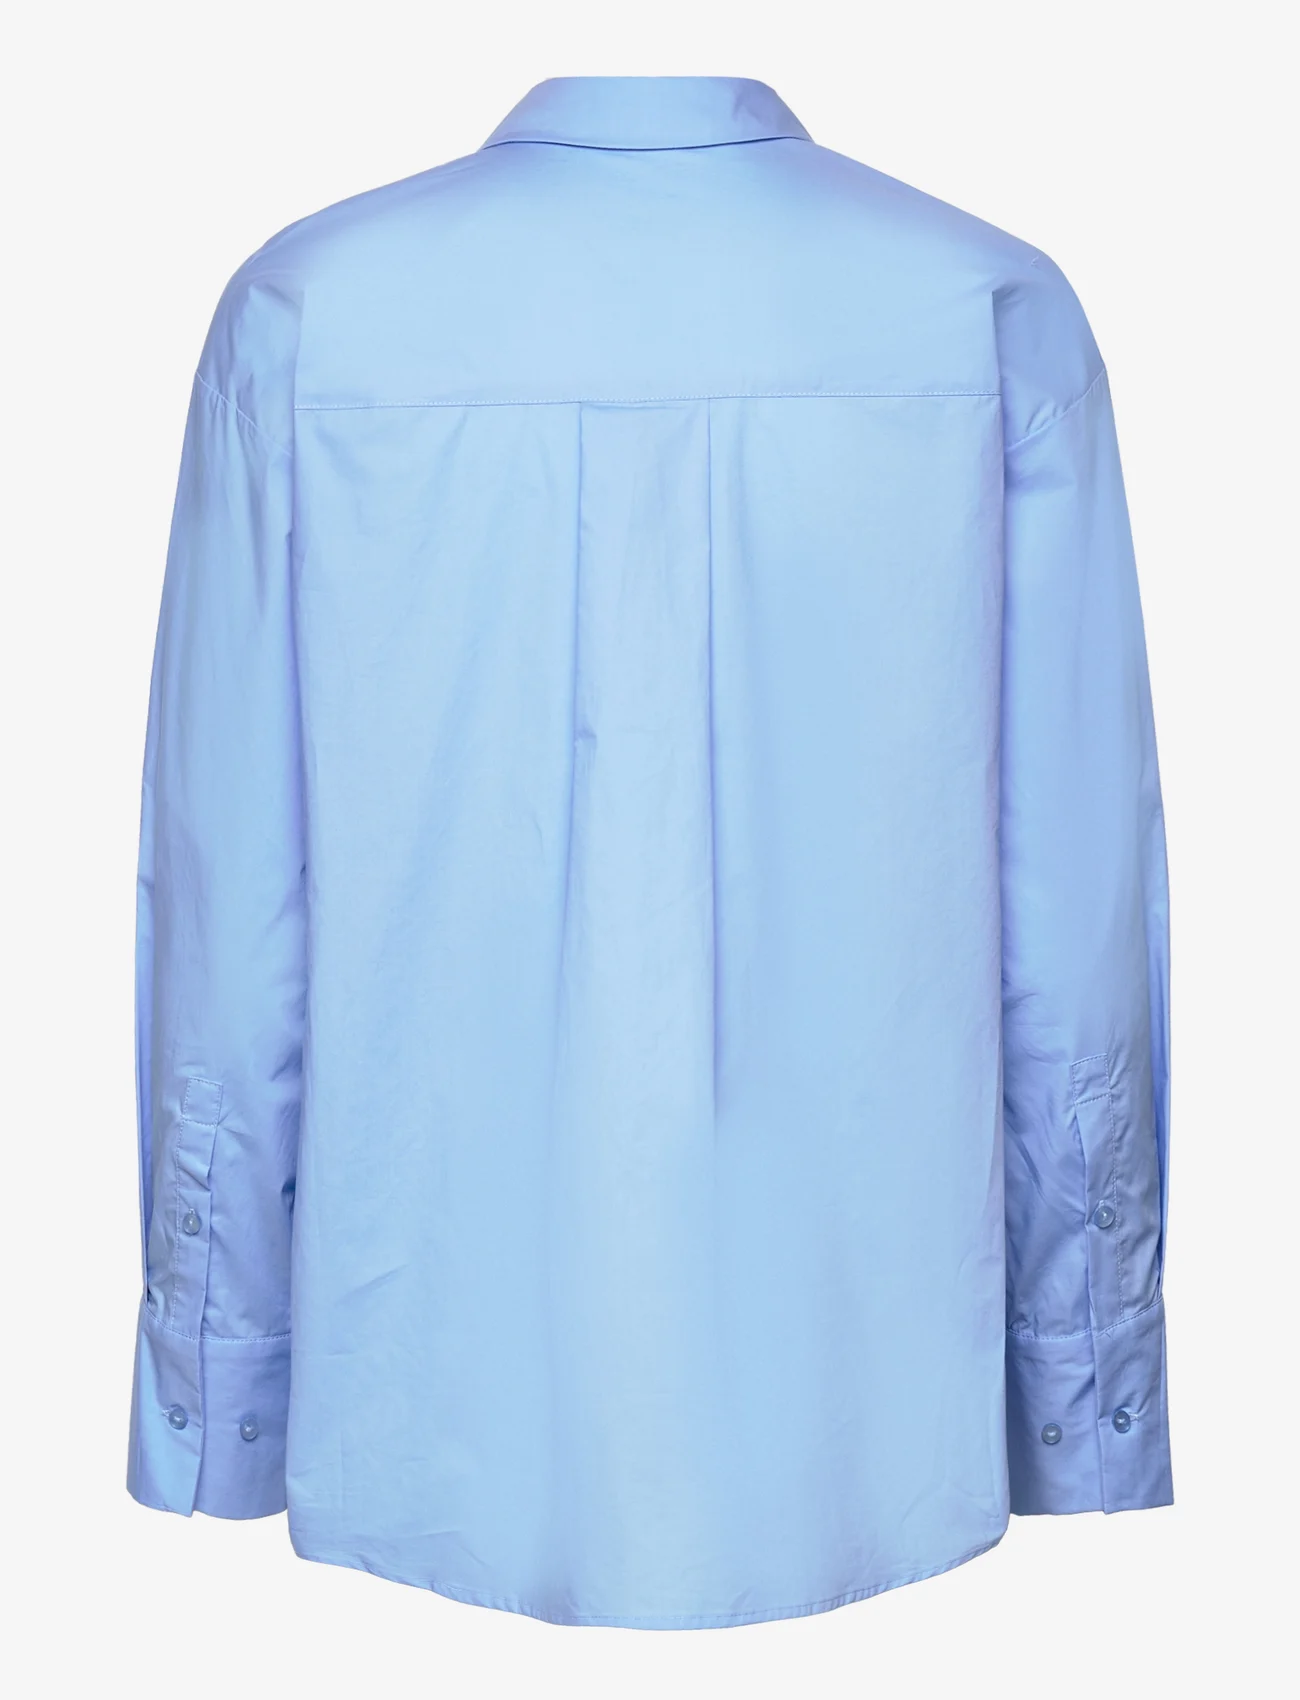 Sofie Schnoor - Shirt - pitkähihaiset paidat - bright blue - 1